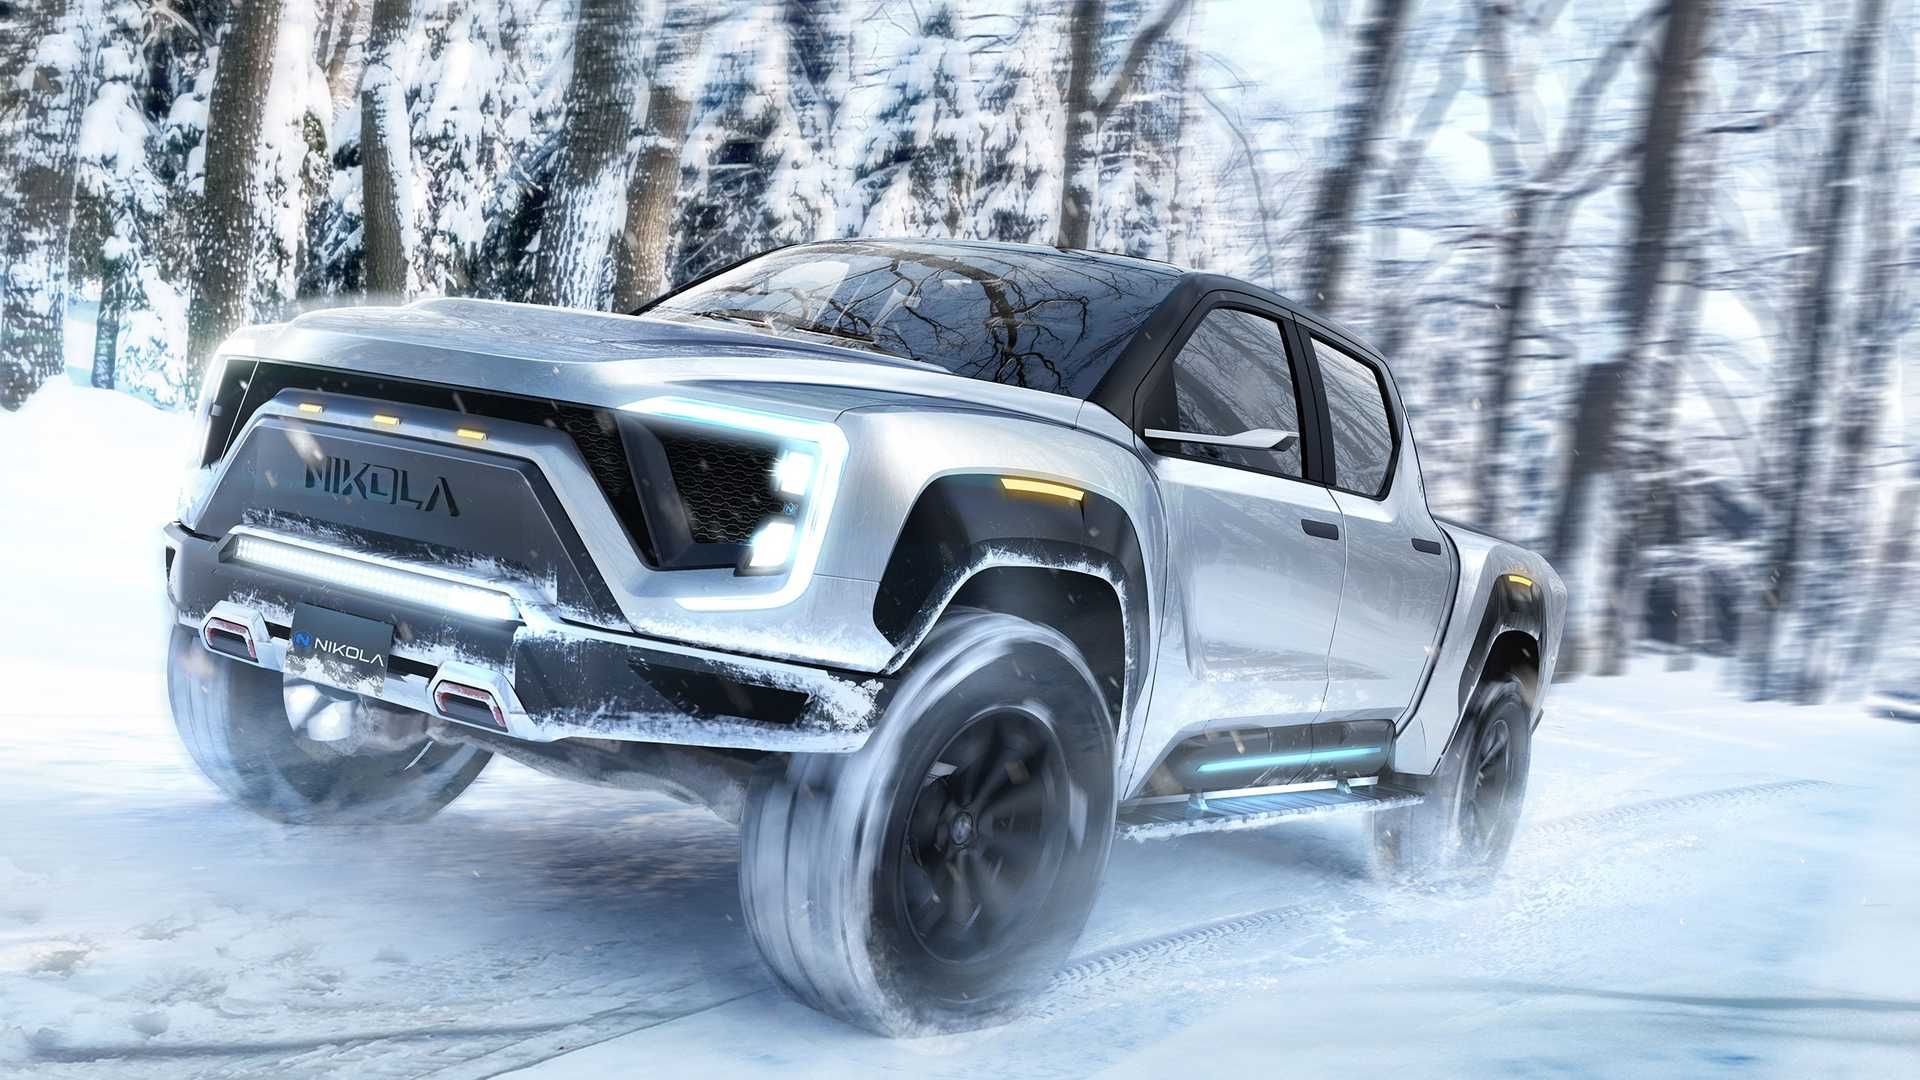 وانت برقی نیکولا بجر / Nikola Badger pickup در برف